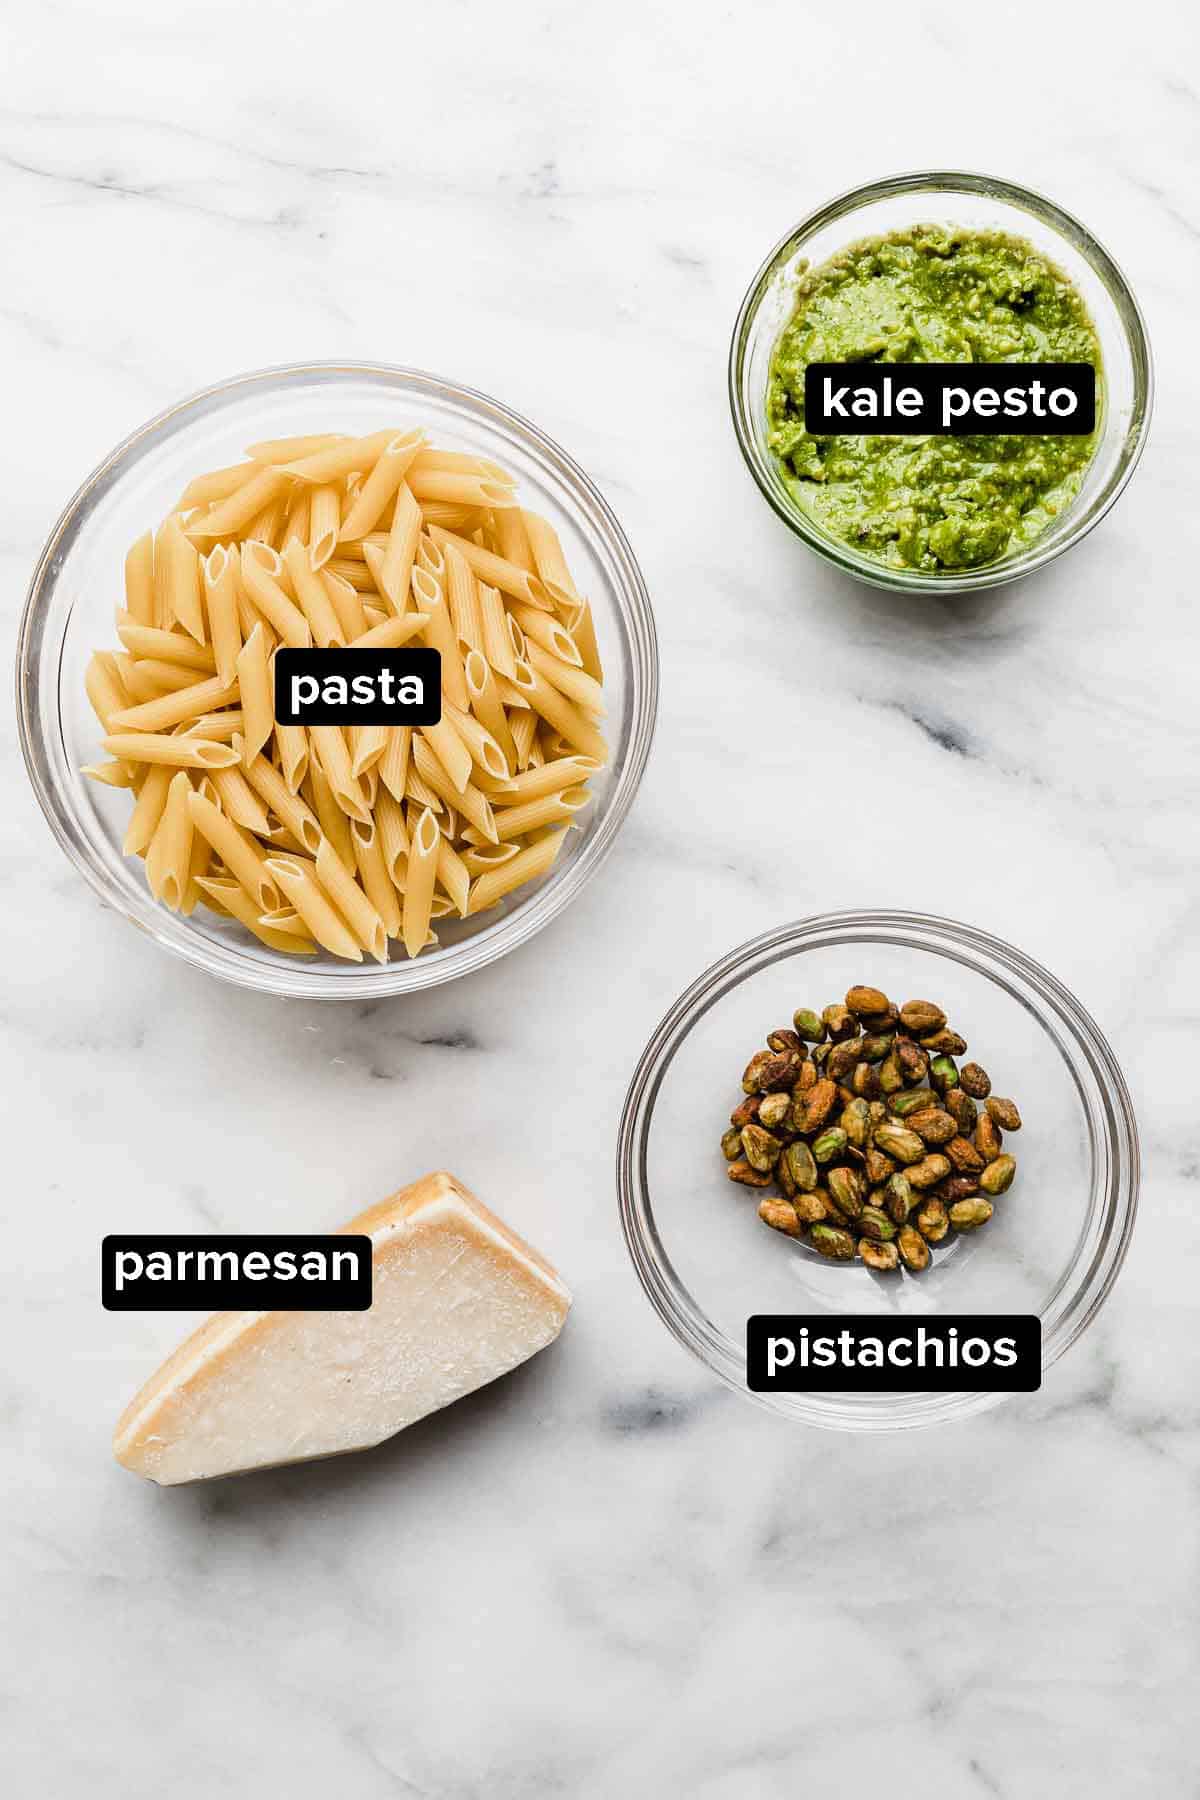 Kale Pesto Pasta ingredients on a white background (kale pesto, noodles, pistachios, parmesan). 